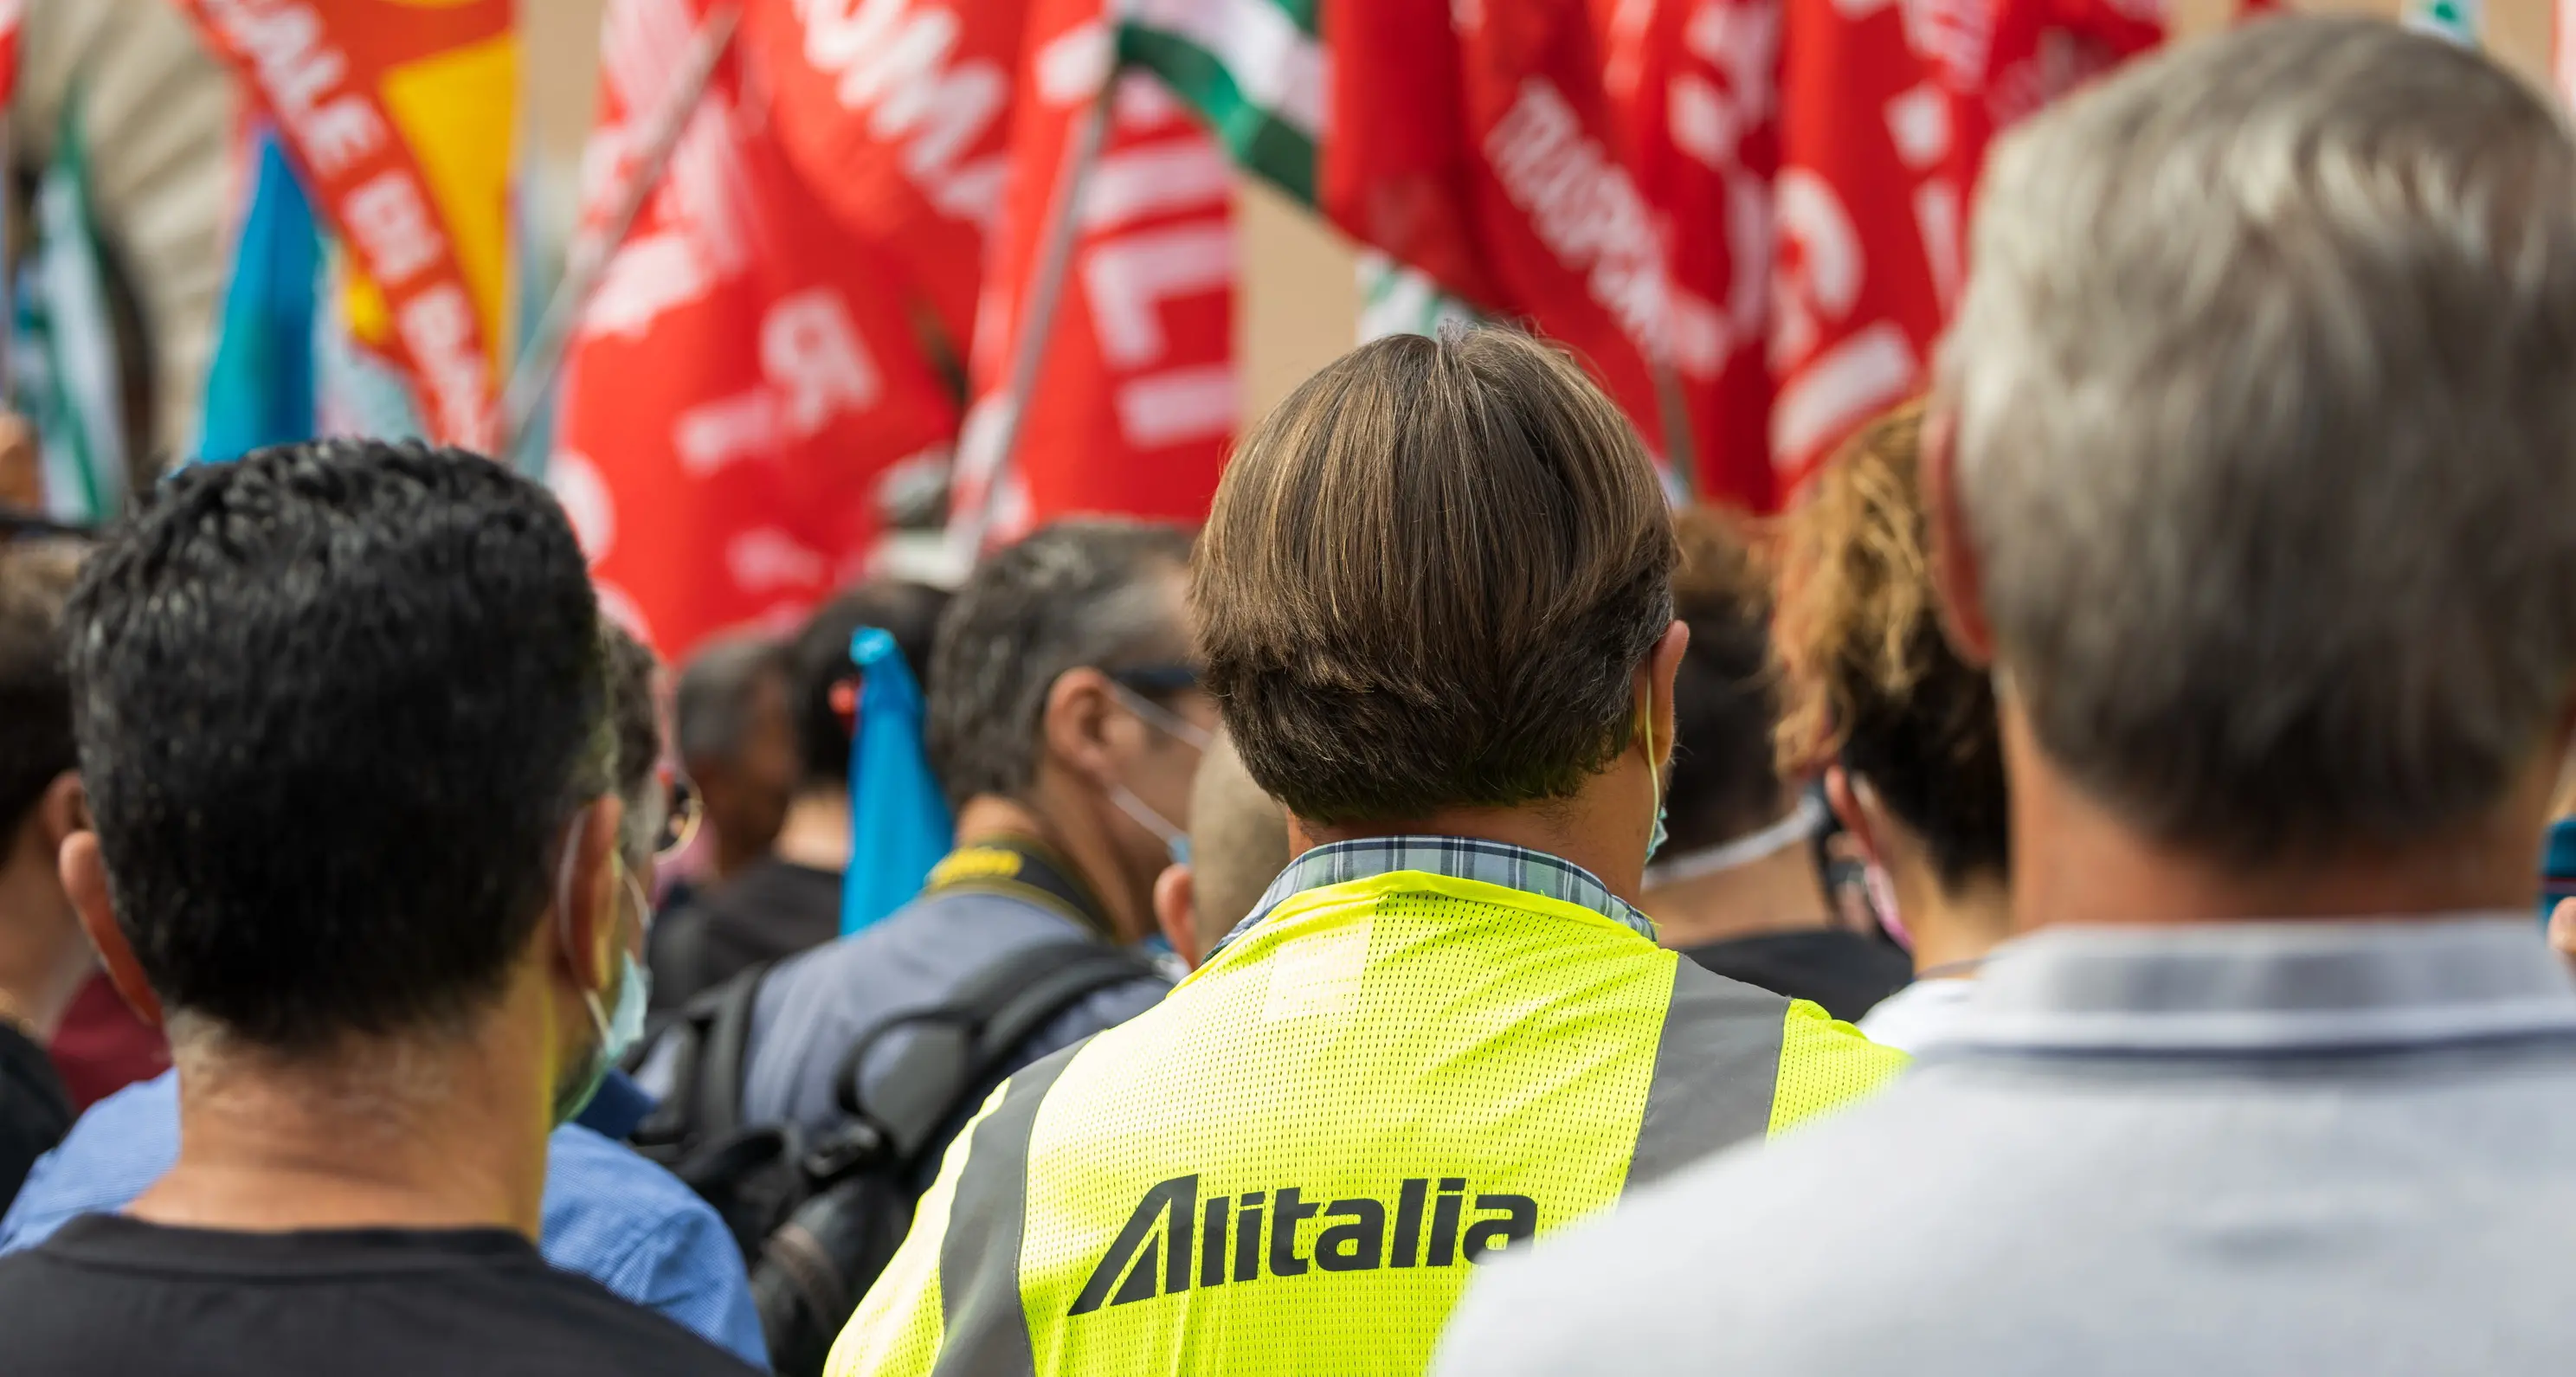 Trattativa su Alitalia, è mobilitazione permanente